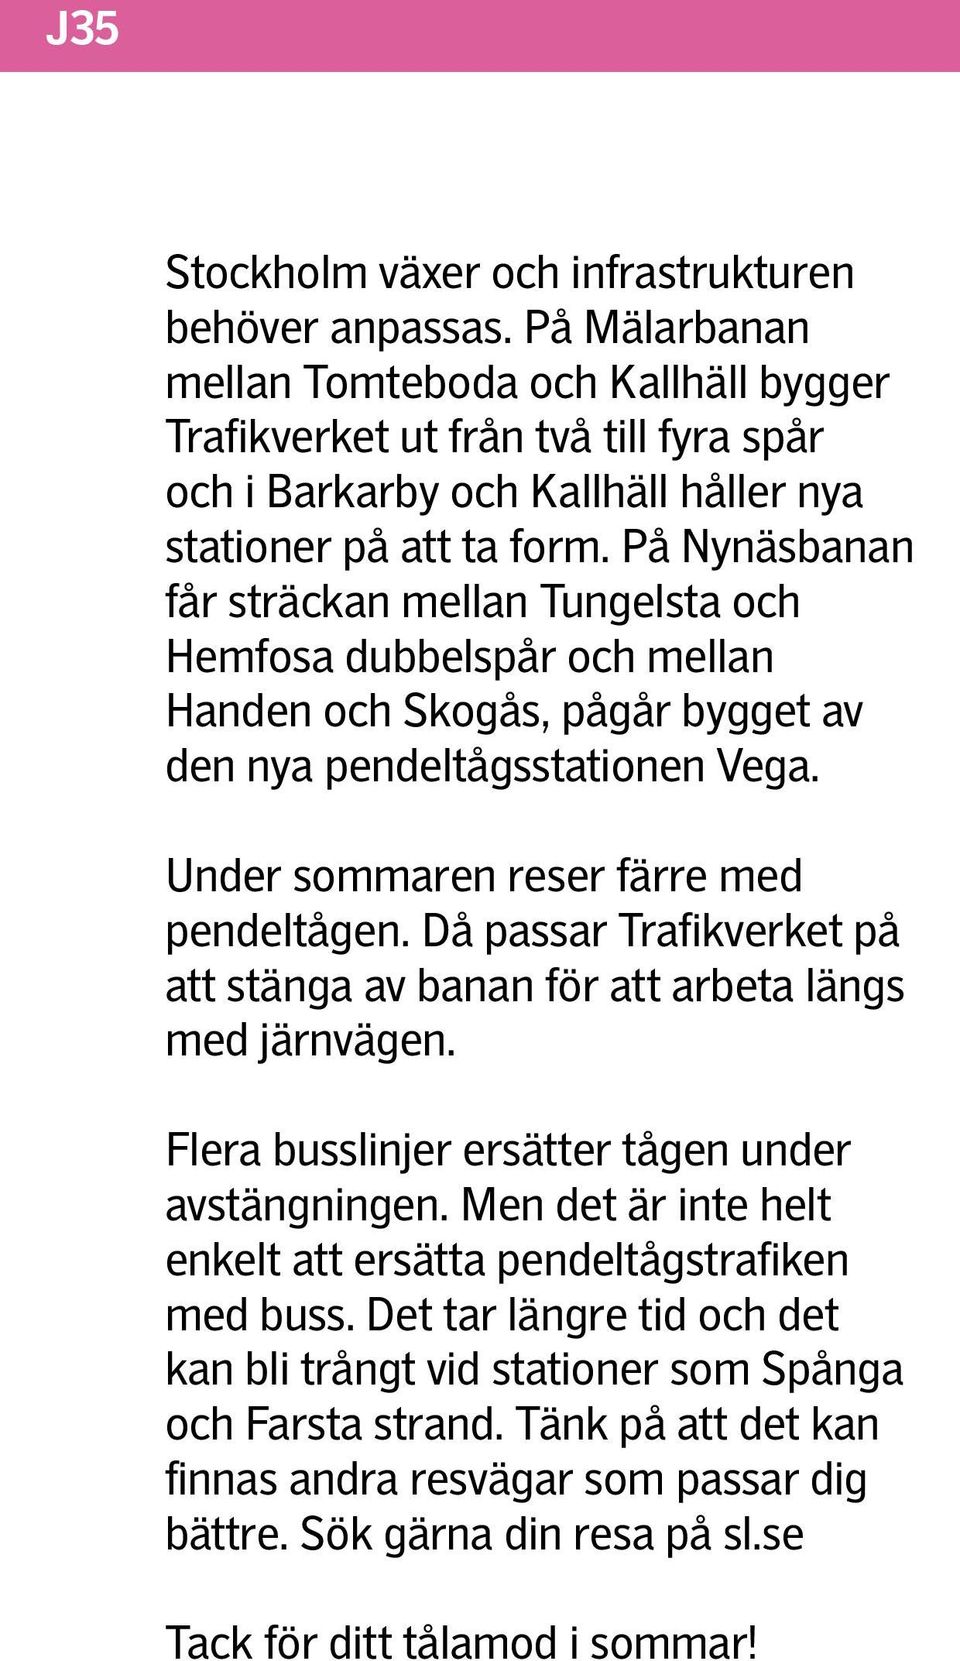 På Nynäsbanan får sträckan mellan Tungelsta och Hemfosa dubbelspår och mellan Handen och Skogås, pågår bygget av den nya pendeltågsstationen Vega. Under sommaren reser färre med pendeltågen.